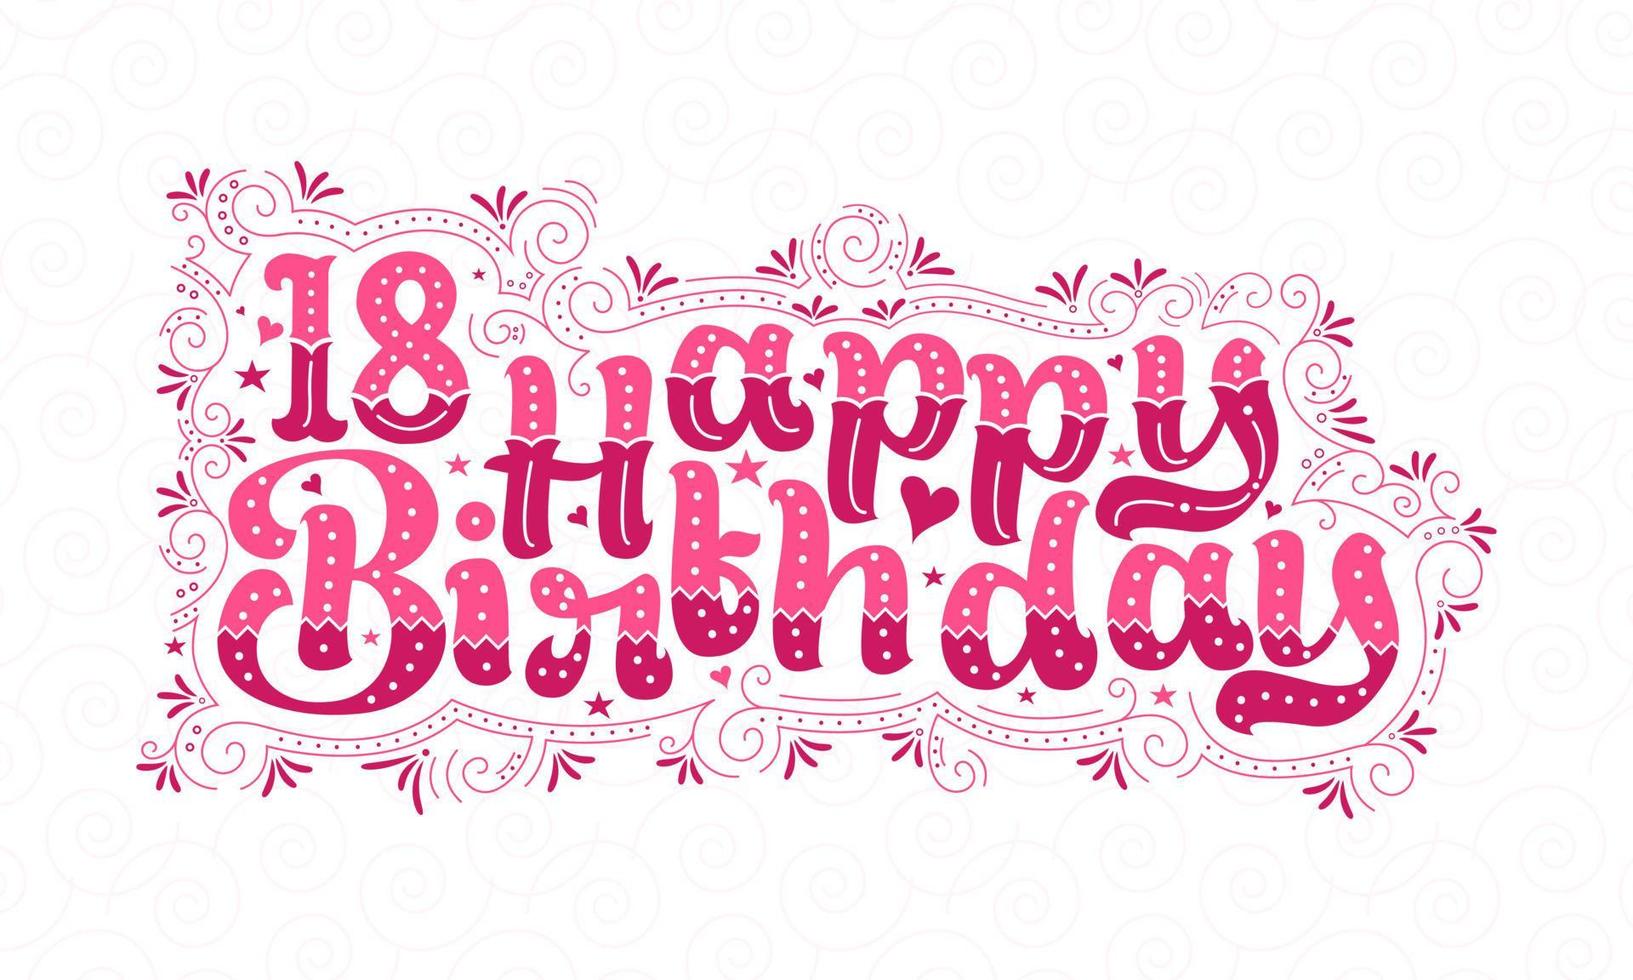 Letras de feliz cumpleaños 18, hermoso diseño tipográfico de cumpleaños de 18 años con puntos rosas, líneas y hojas. vector